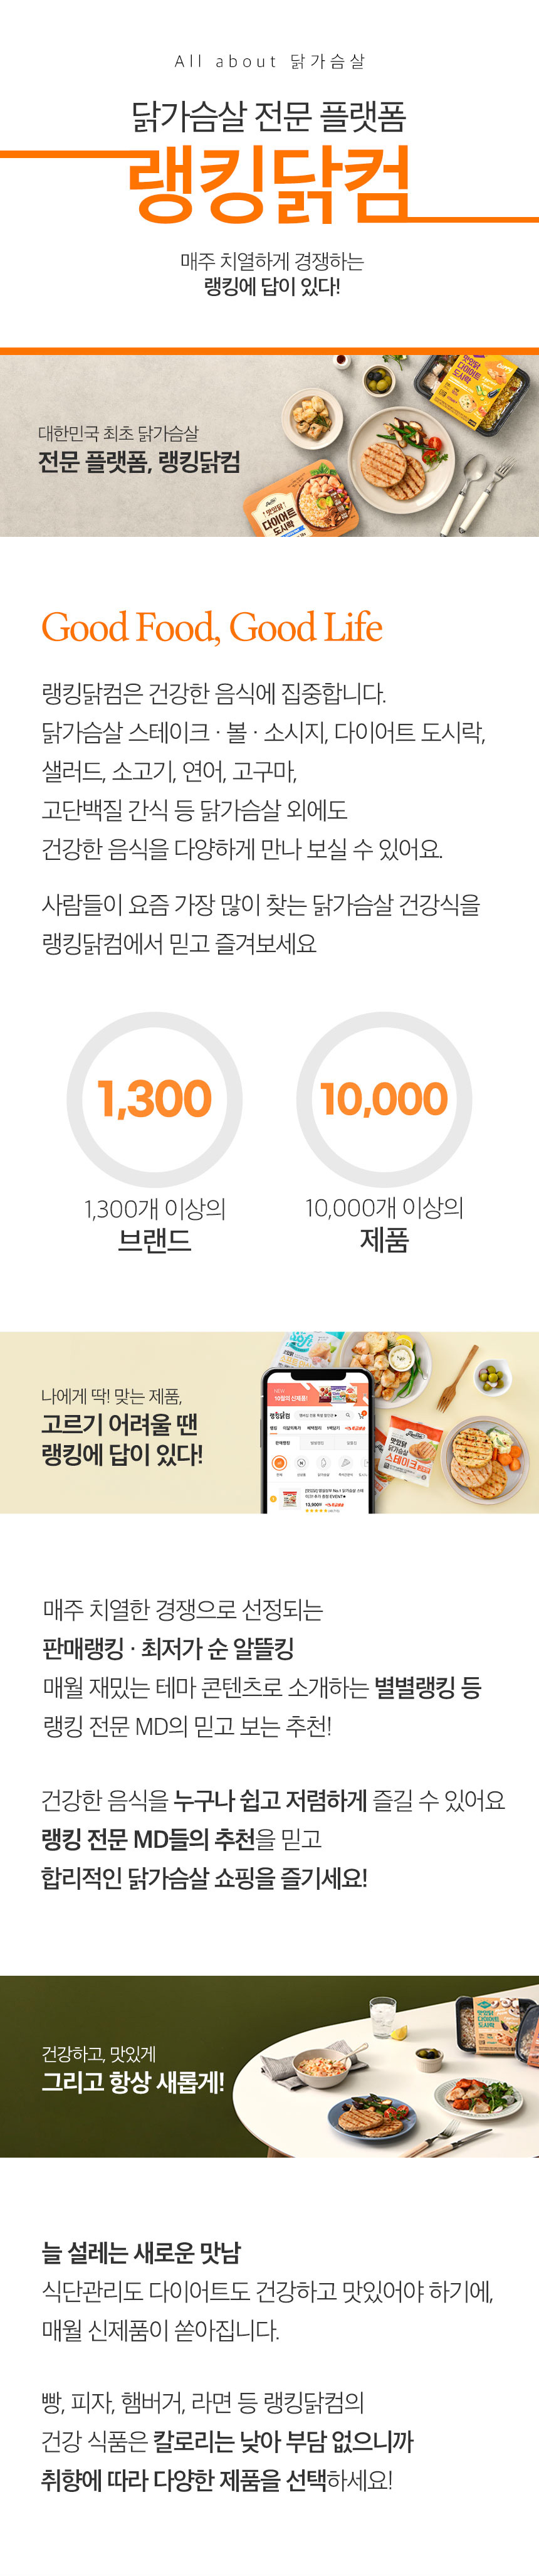 닭가슴살 전문 플랫폼 - 랭킹닭컴 회사소개